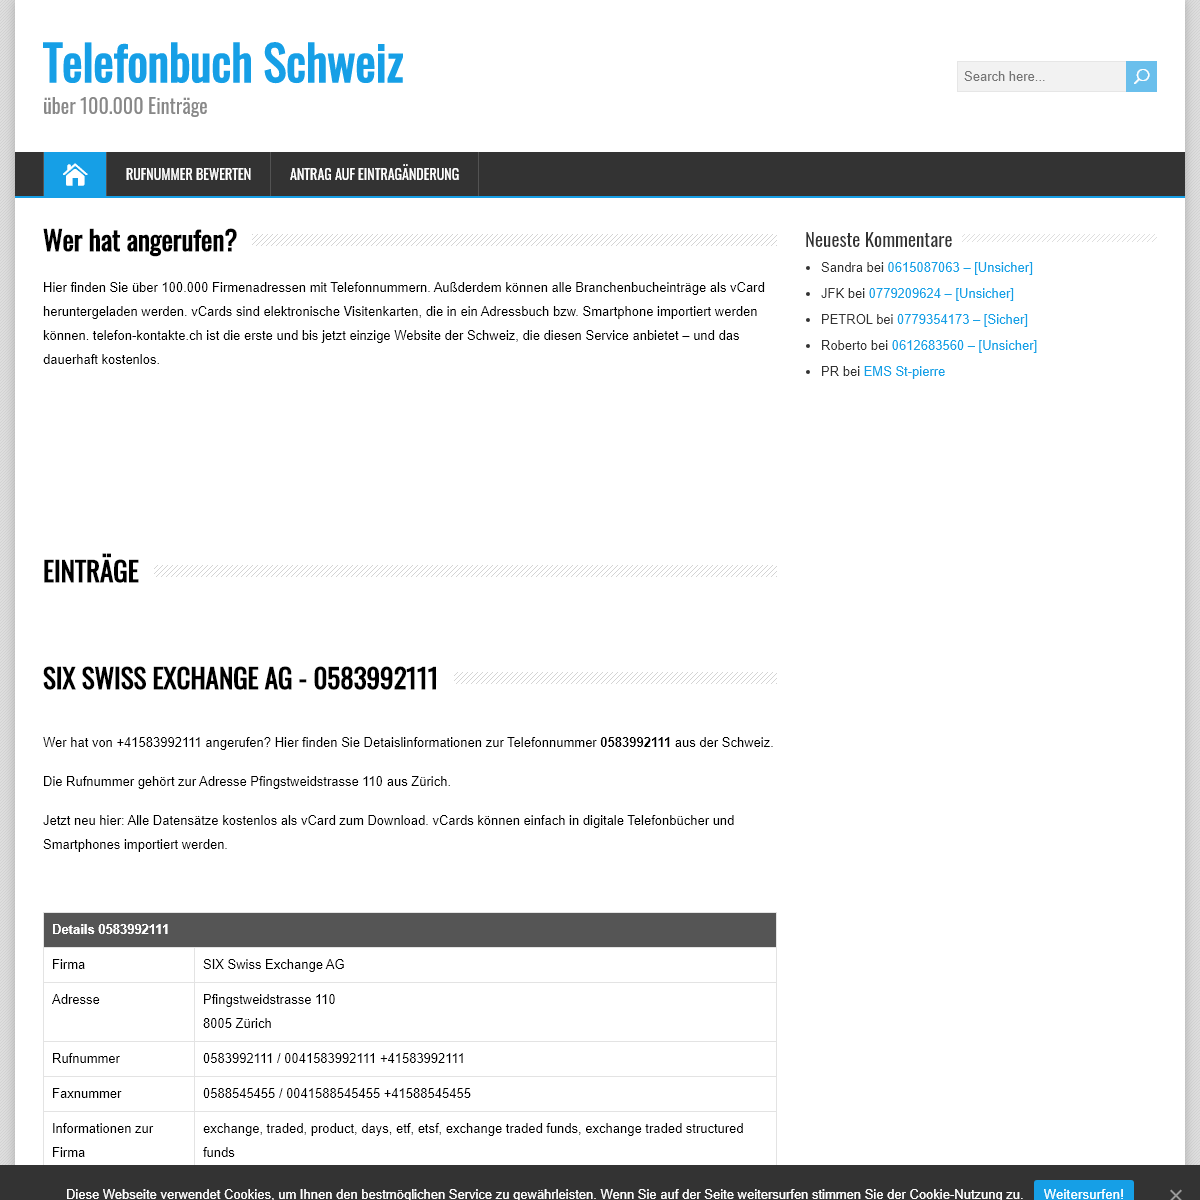 A complete backup of www.www.telefon-kontakte.ch